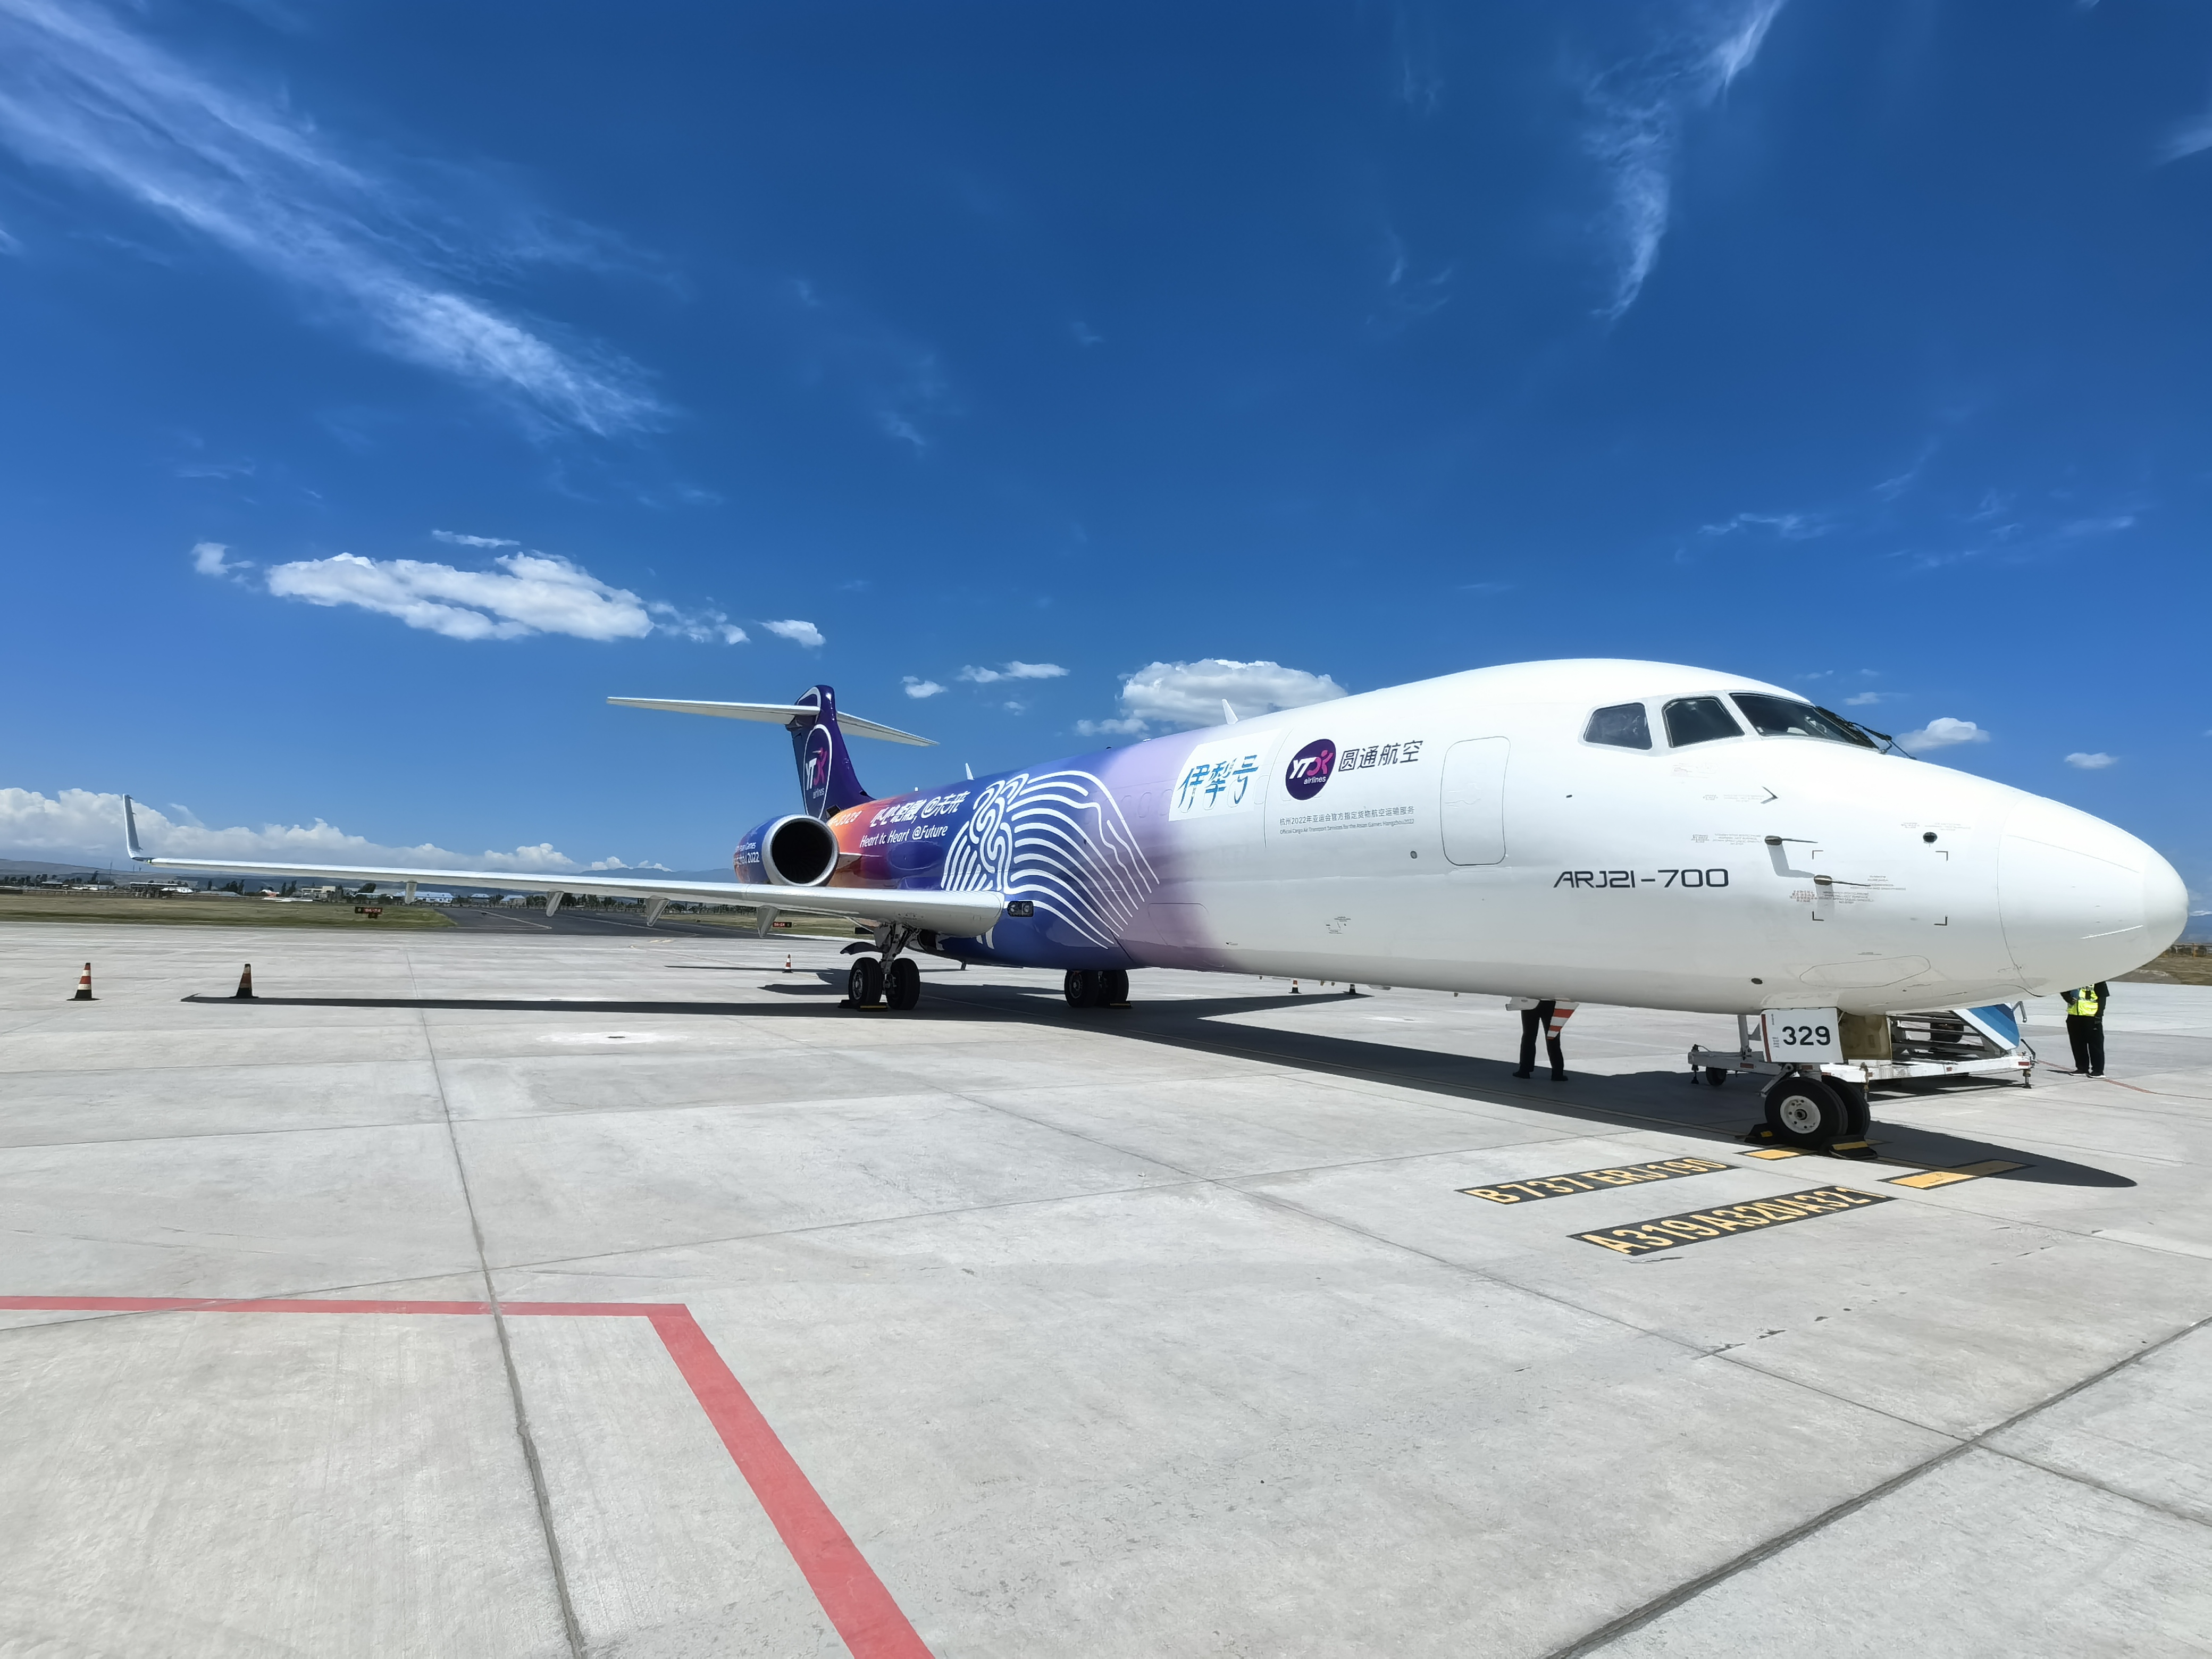 arj21客改货飞机完成首次商业飞行,arj21系列化发展迈出新步伐